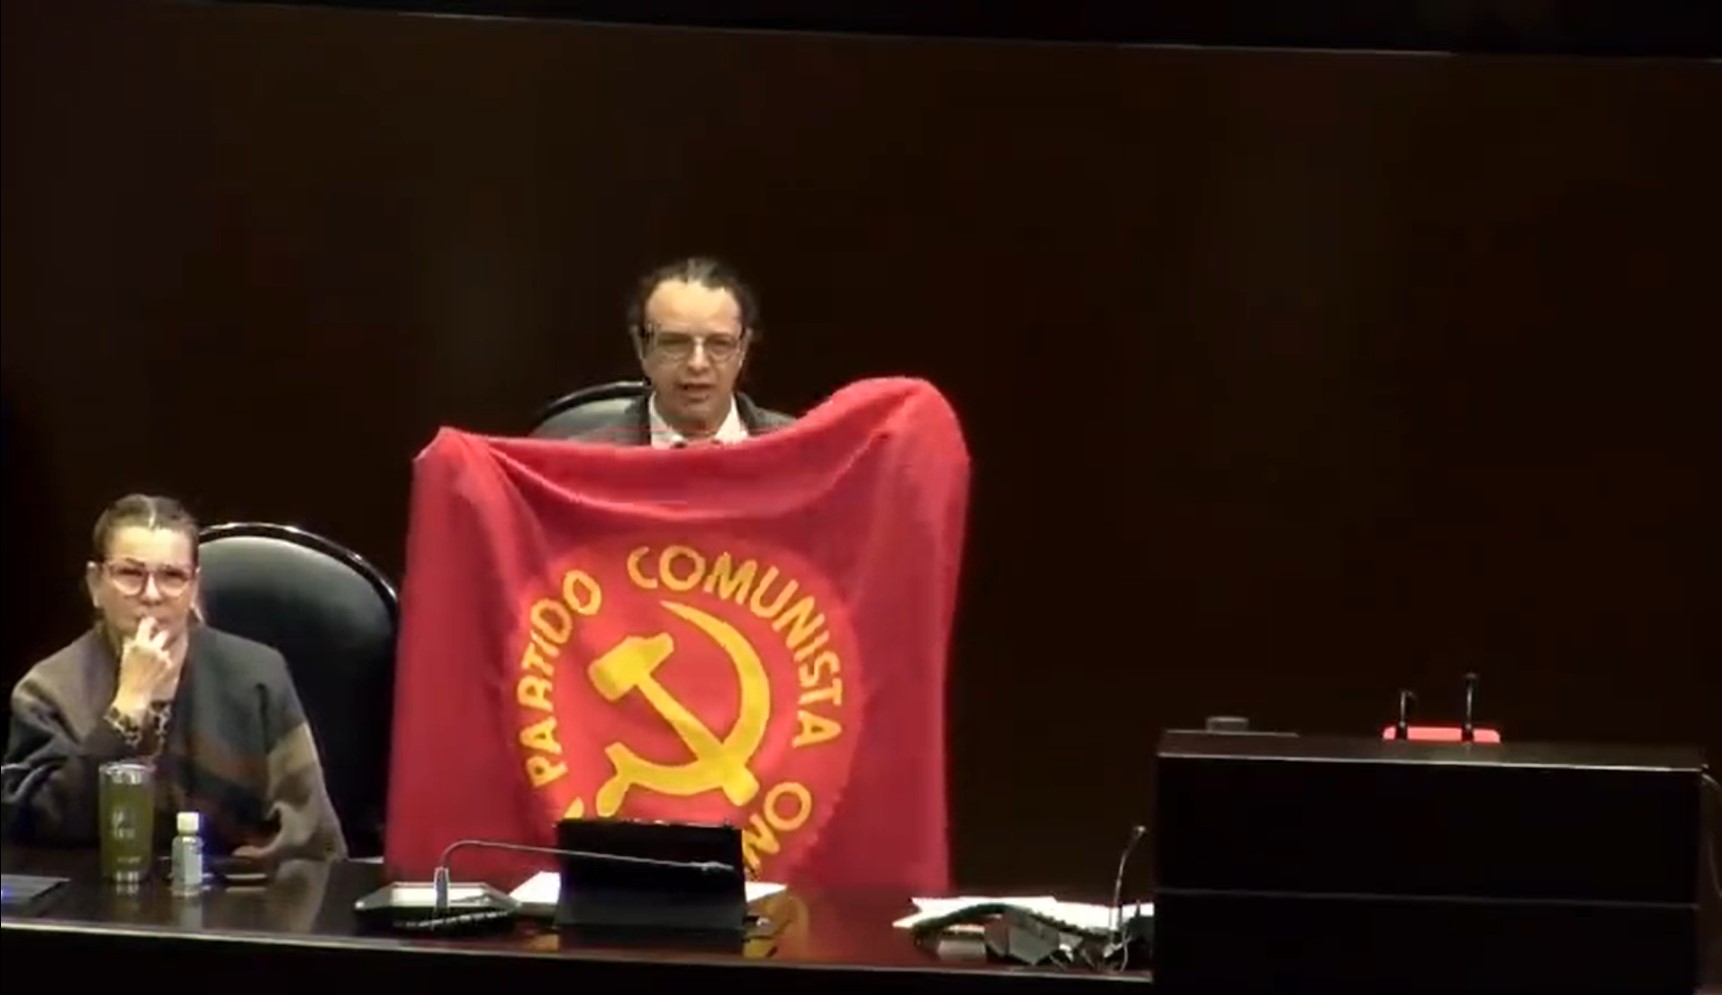 Tundieron en redes sociales a un diputado de Morena que ondeó la bandera  del Partido Comunista Mexicano en la tribuna - Infobae